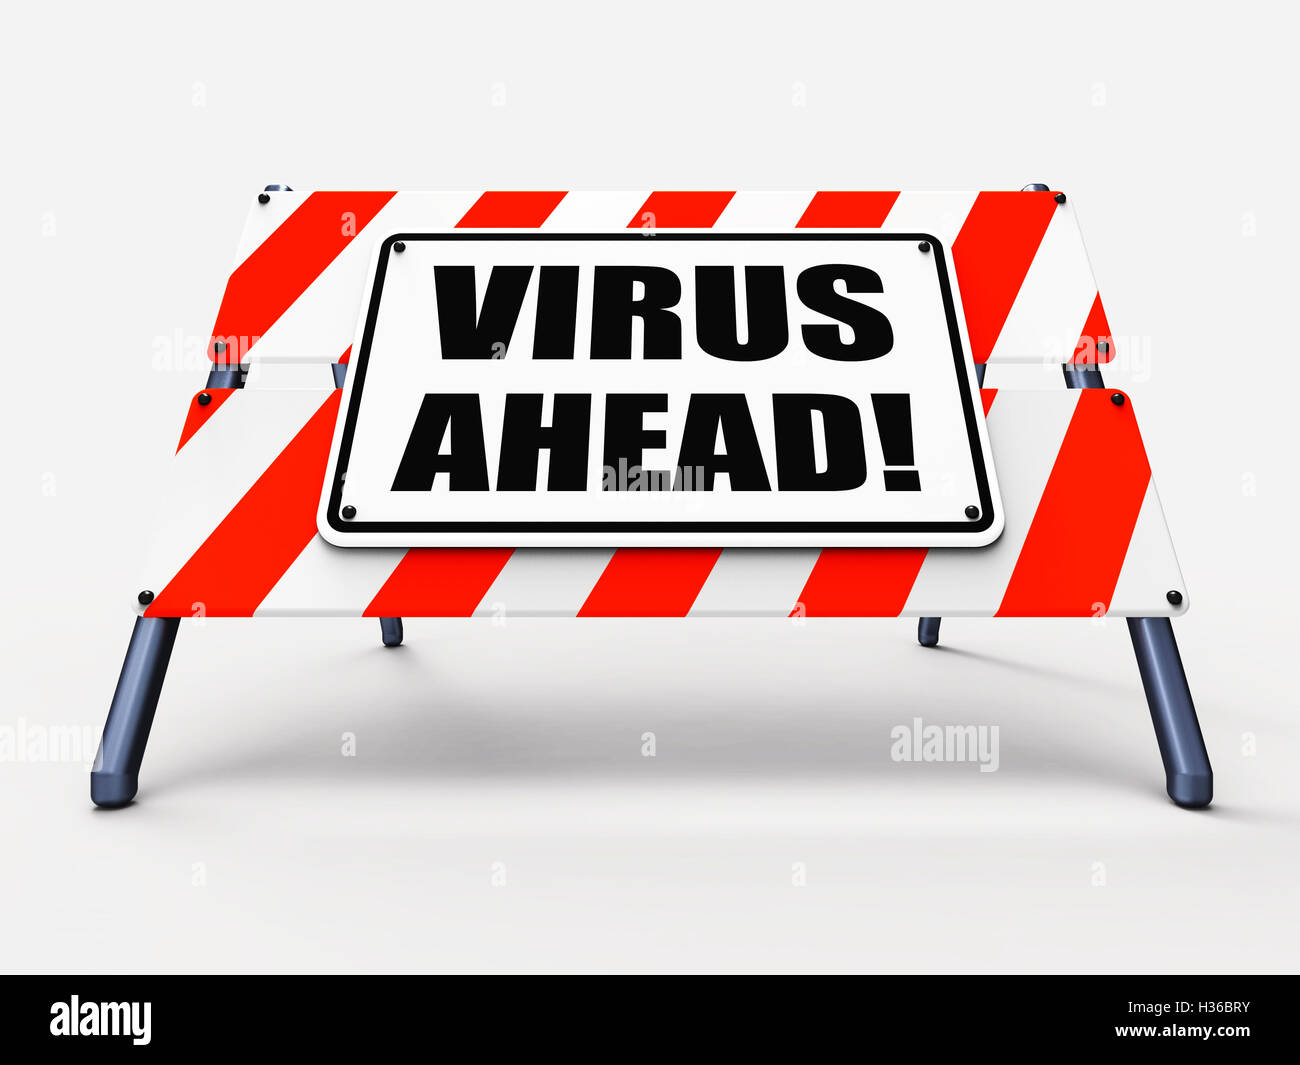 Virus voraus zeigt Viren und zukünftige böswillige Beschädigung Stockfoto